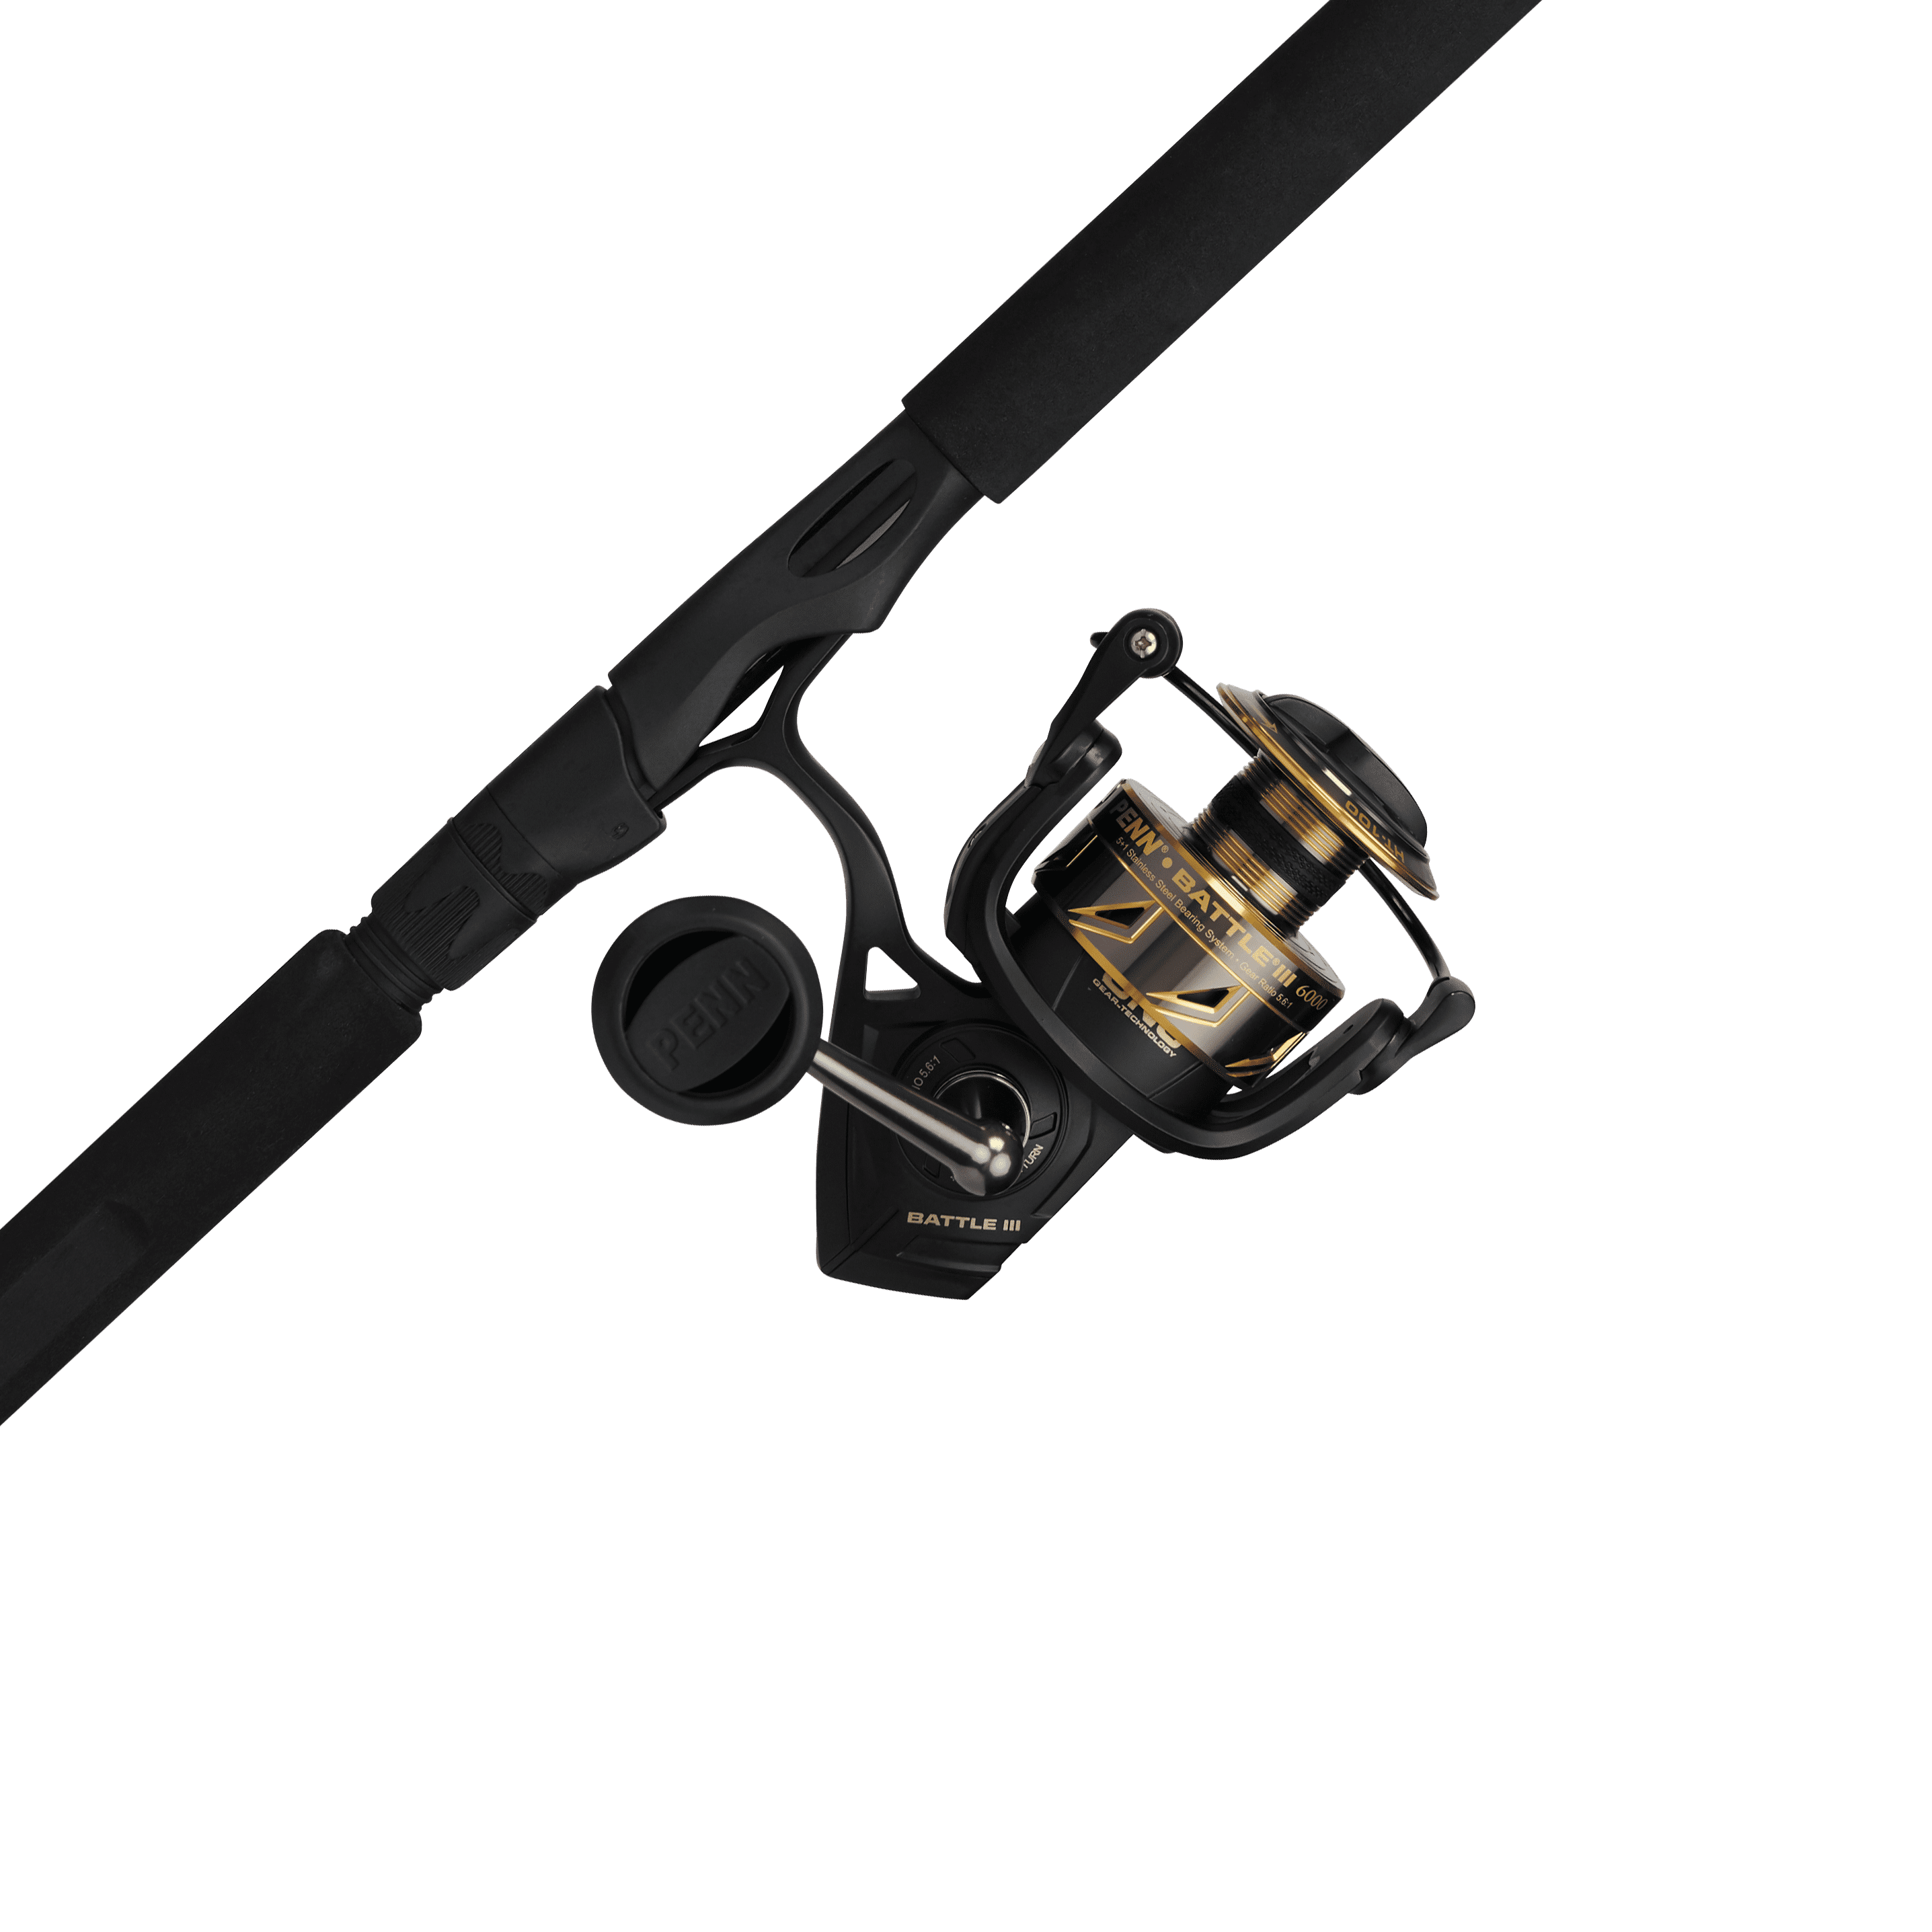 PENN Buy Fishing Rod & Reels Combos Online